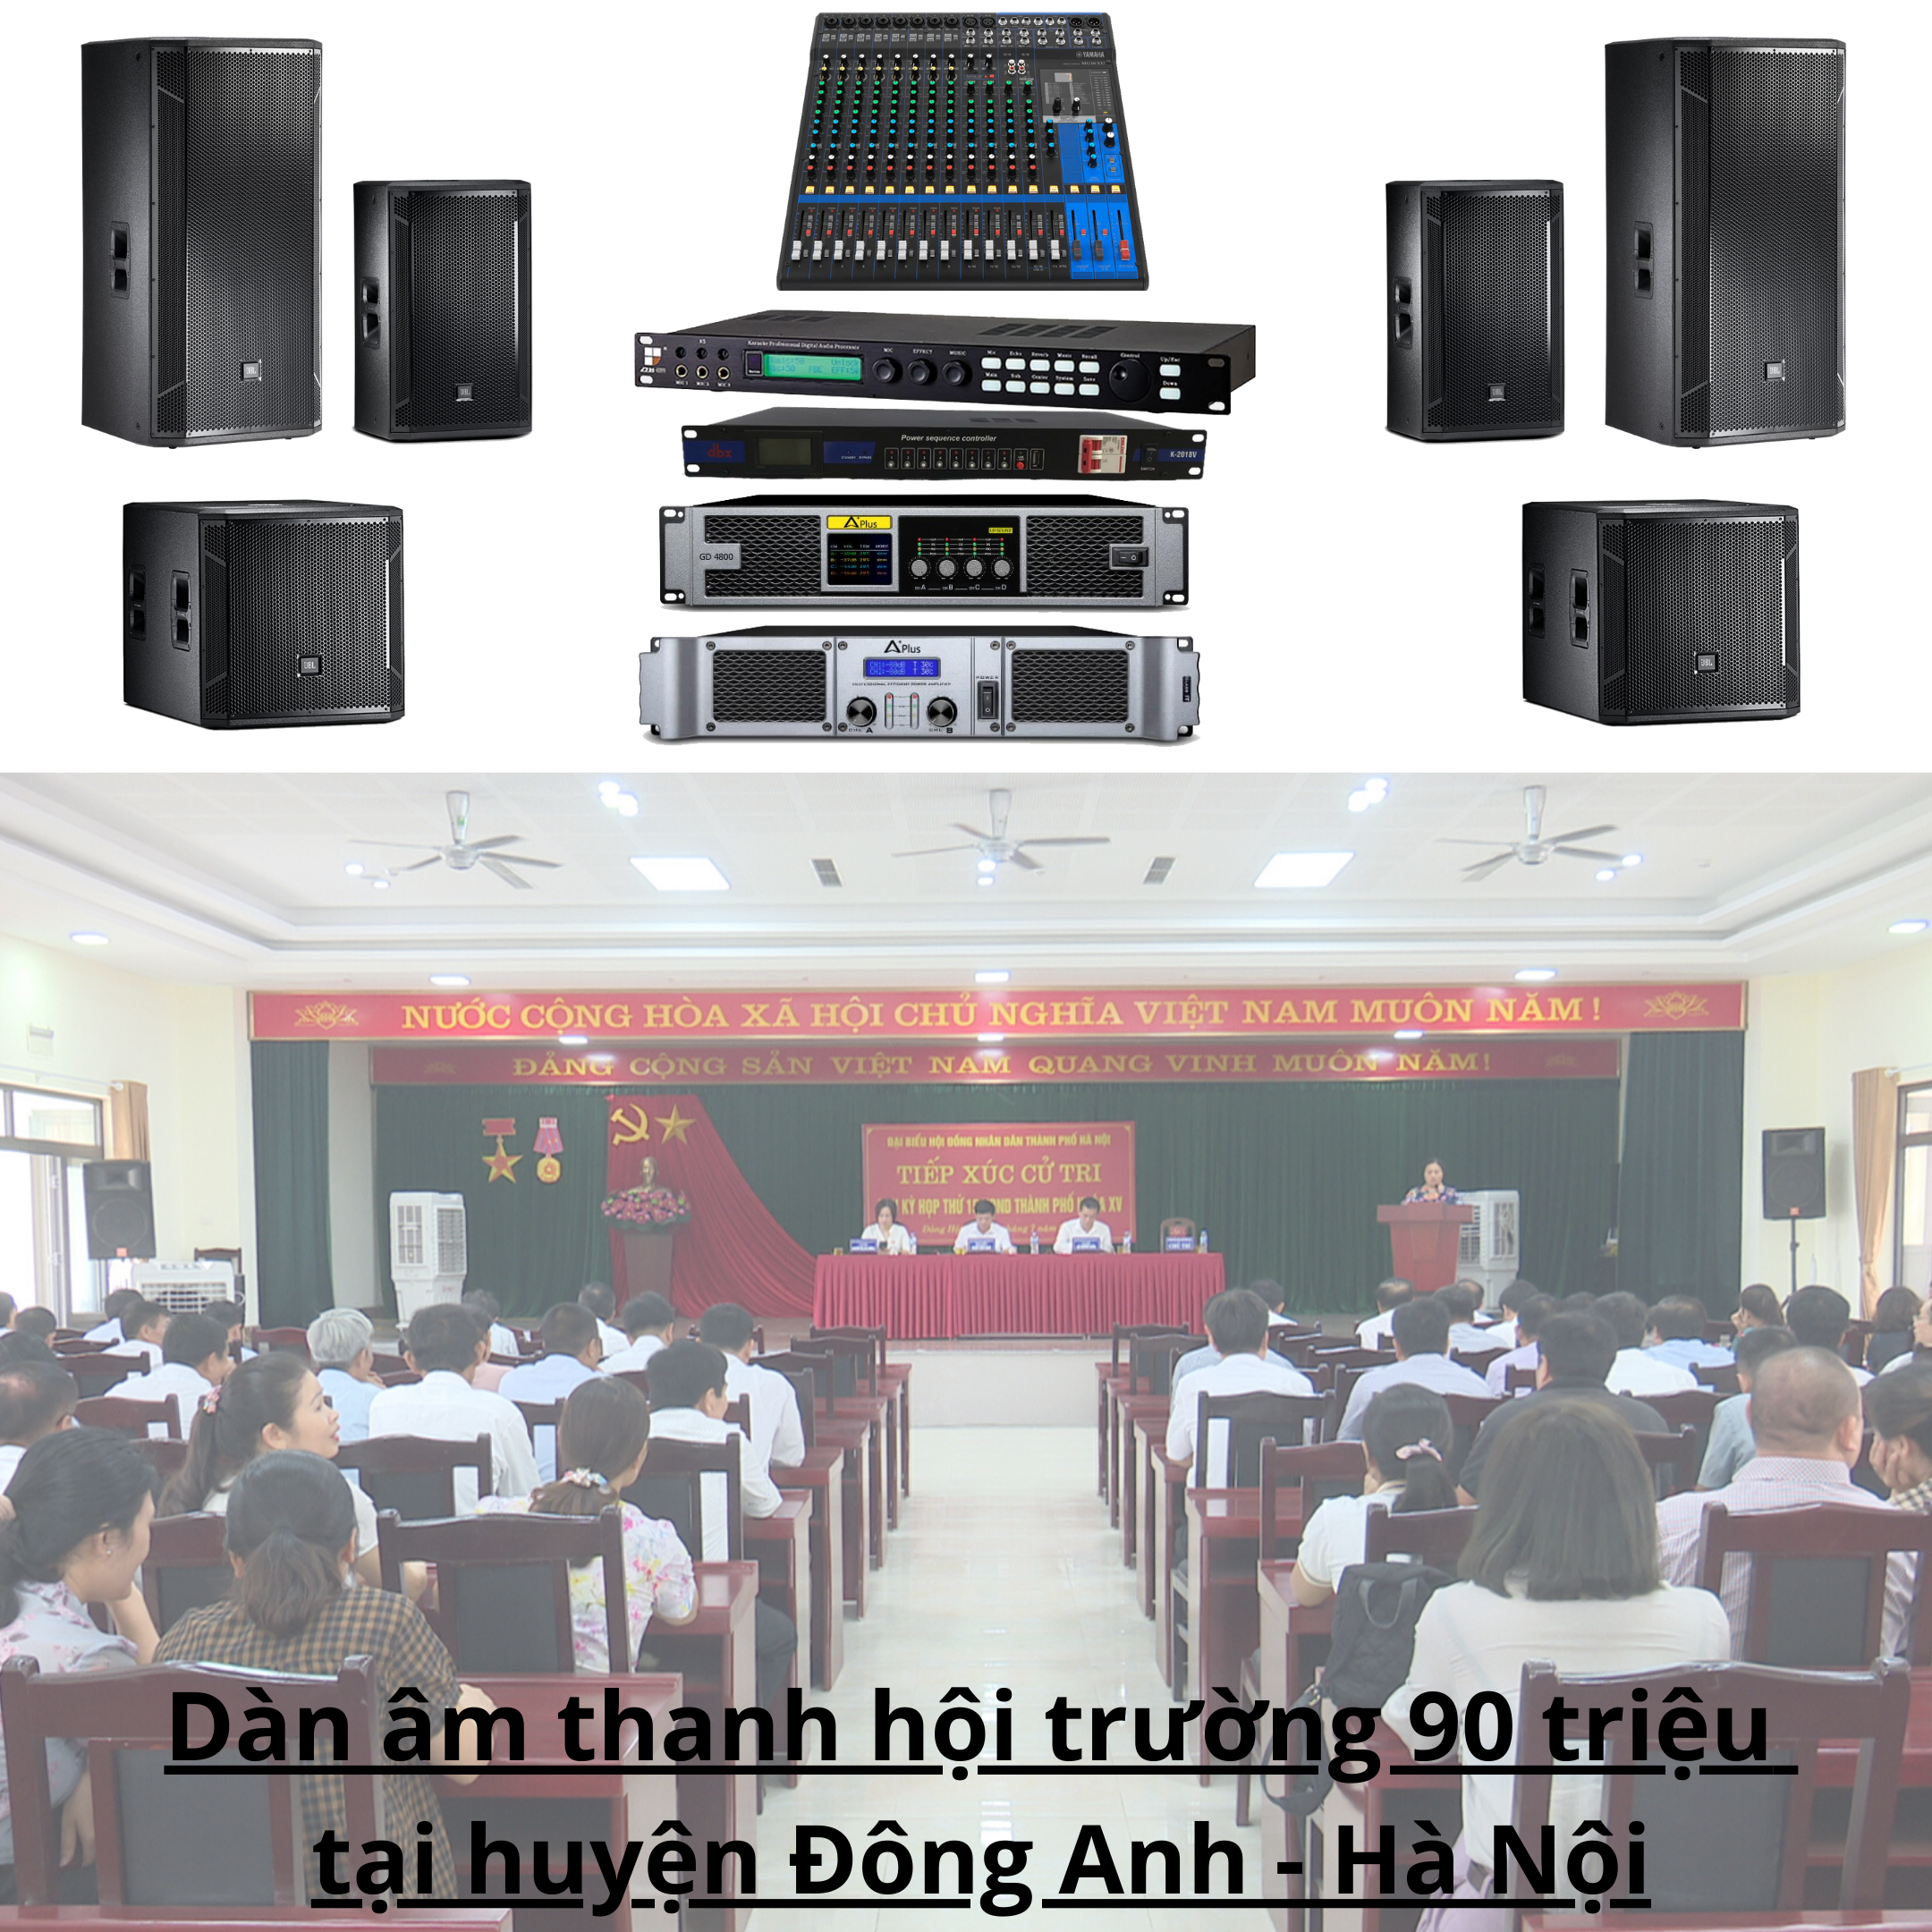 Dàn âm thanh hội trường 90 triệu tại huyện Đông Anh - Hà Nội